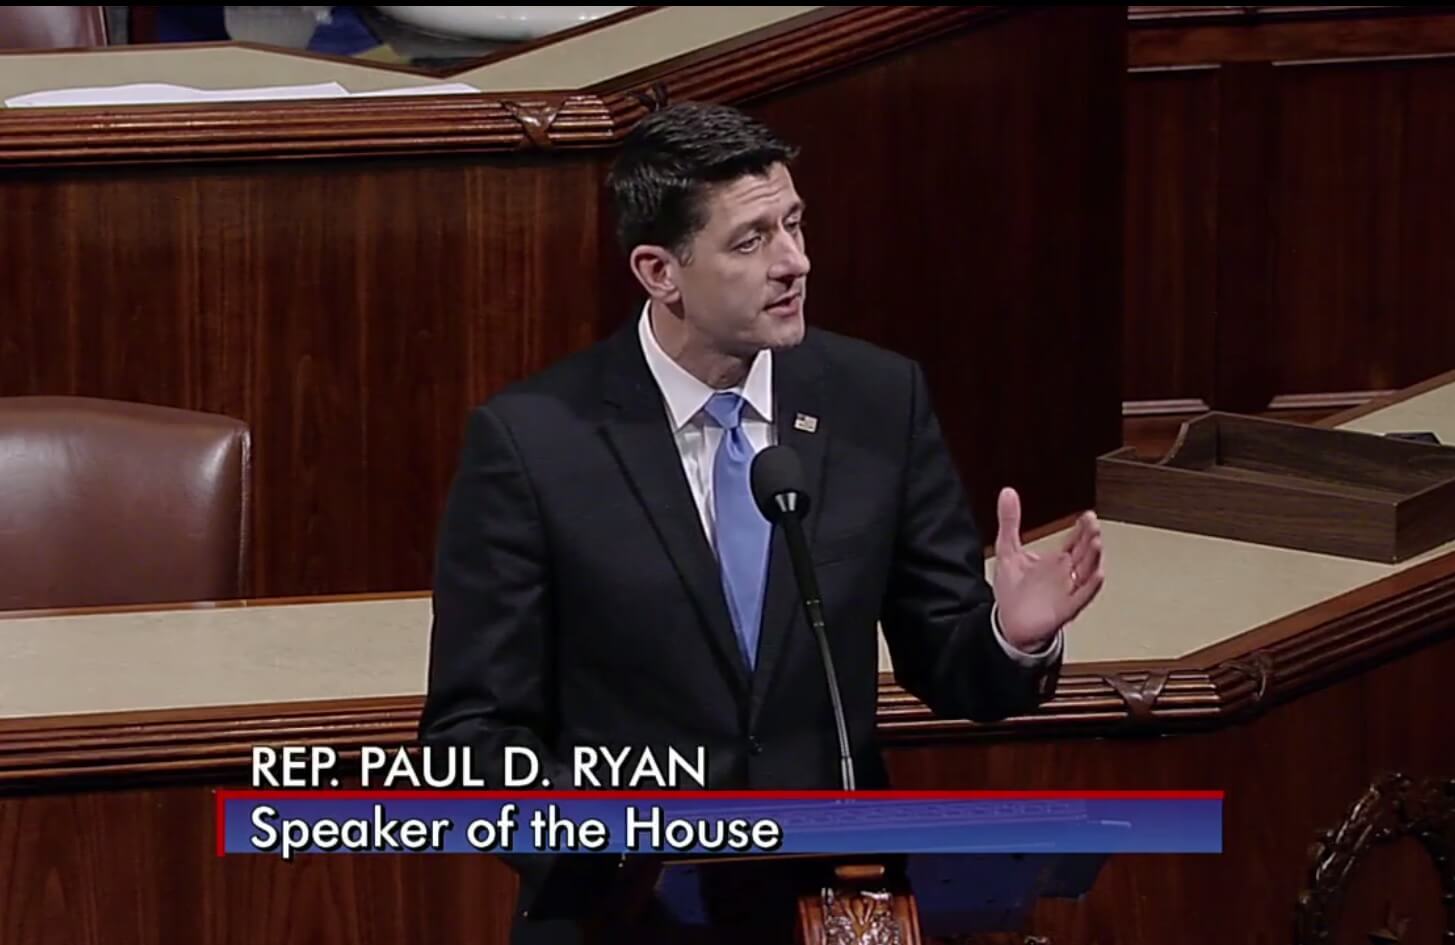 Paul Ryan speaking on House floor